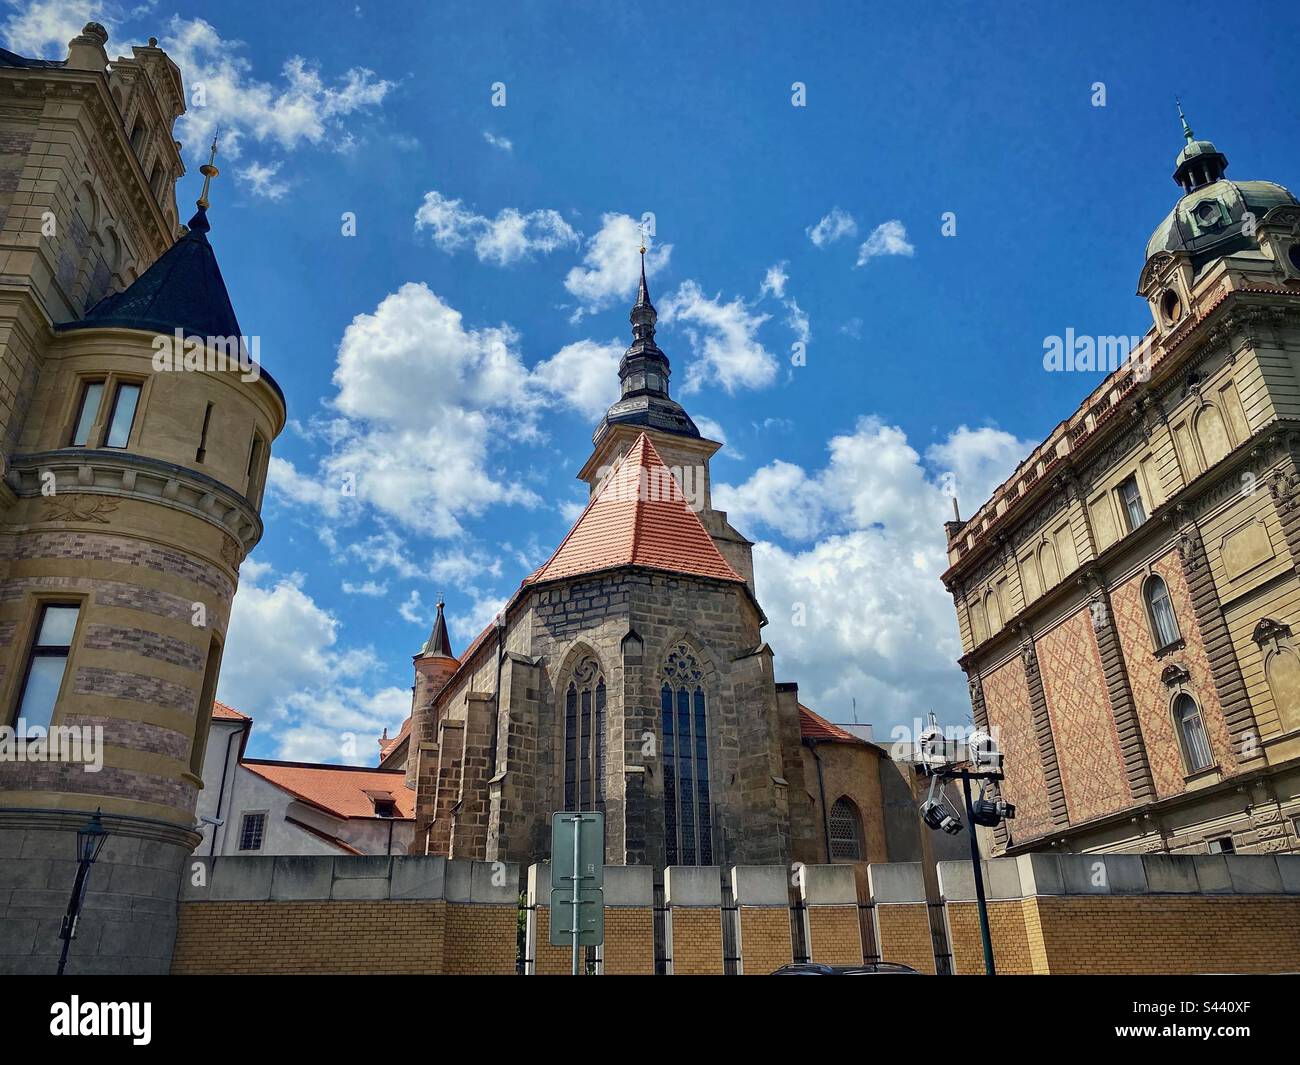 Ancien monastère franciscain dans le centre historique de Pilsen, République tchèque. Banque D'Images